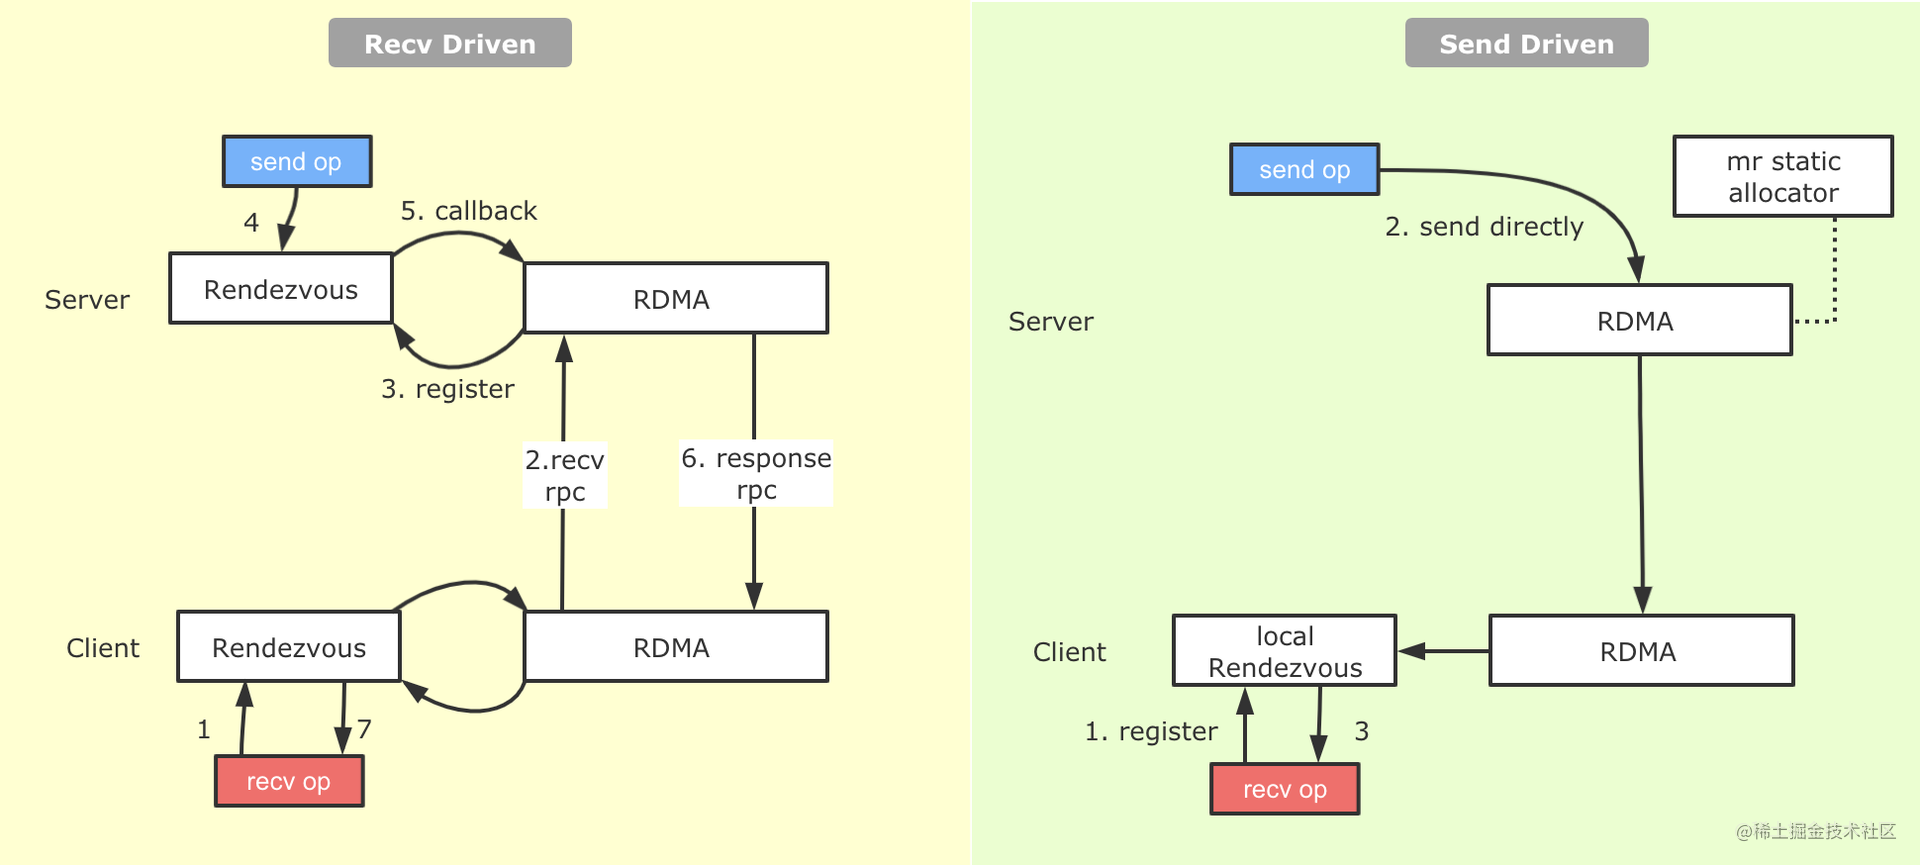 图13 原生的Recv-Driven与补充的Send-Driven机制